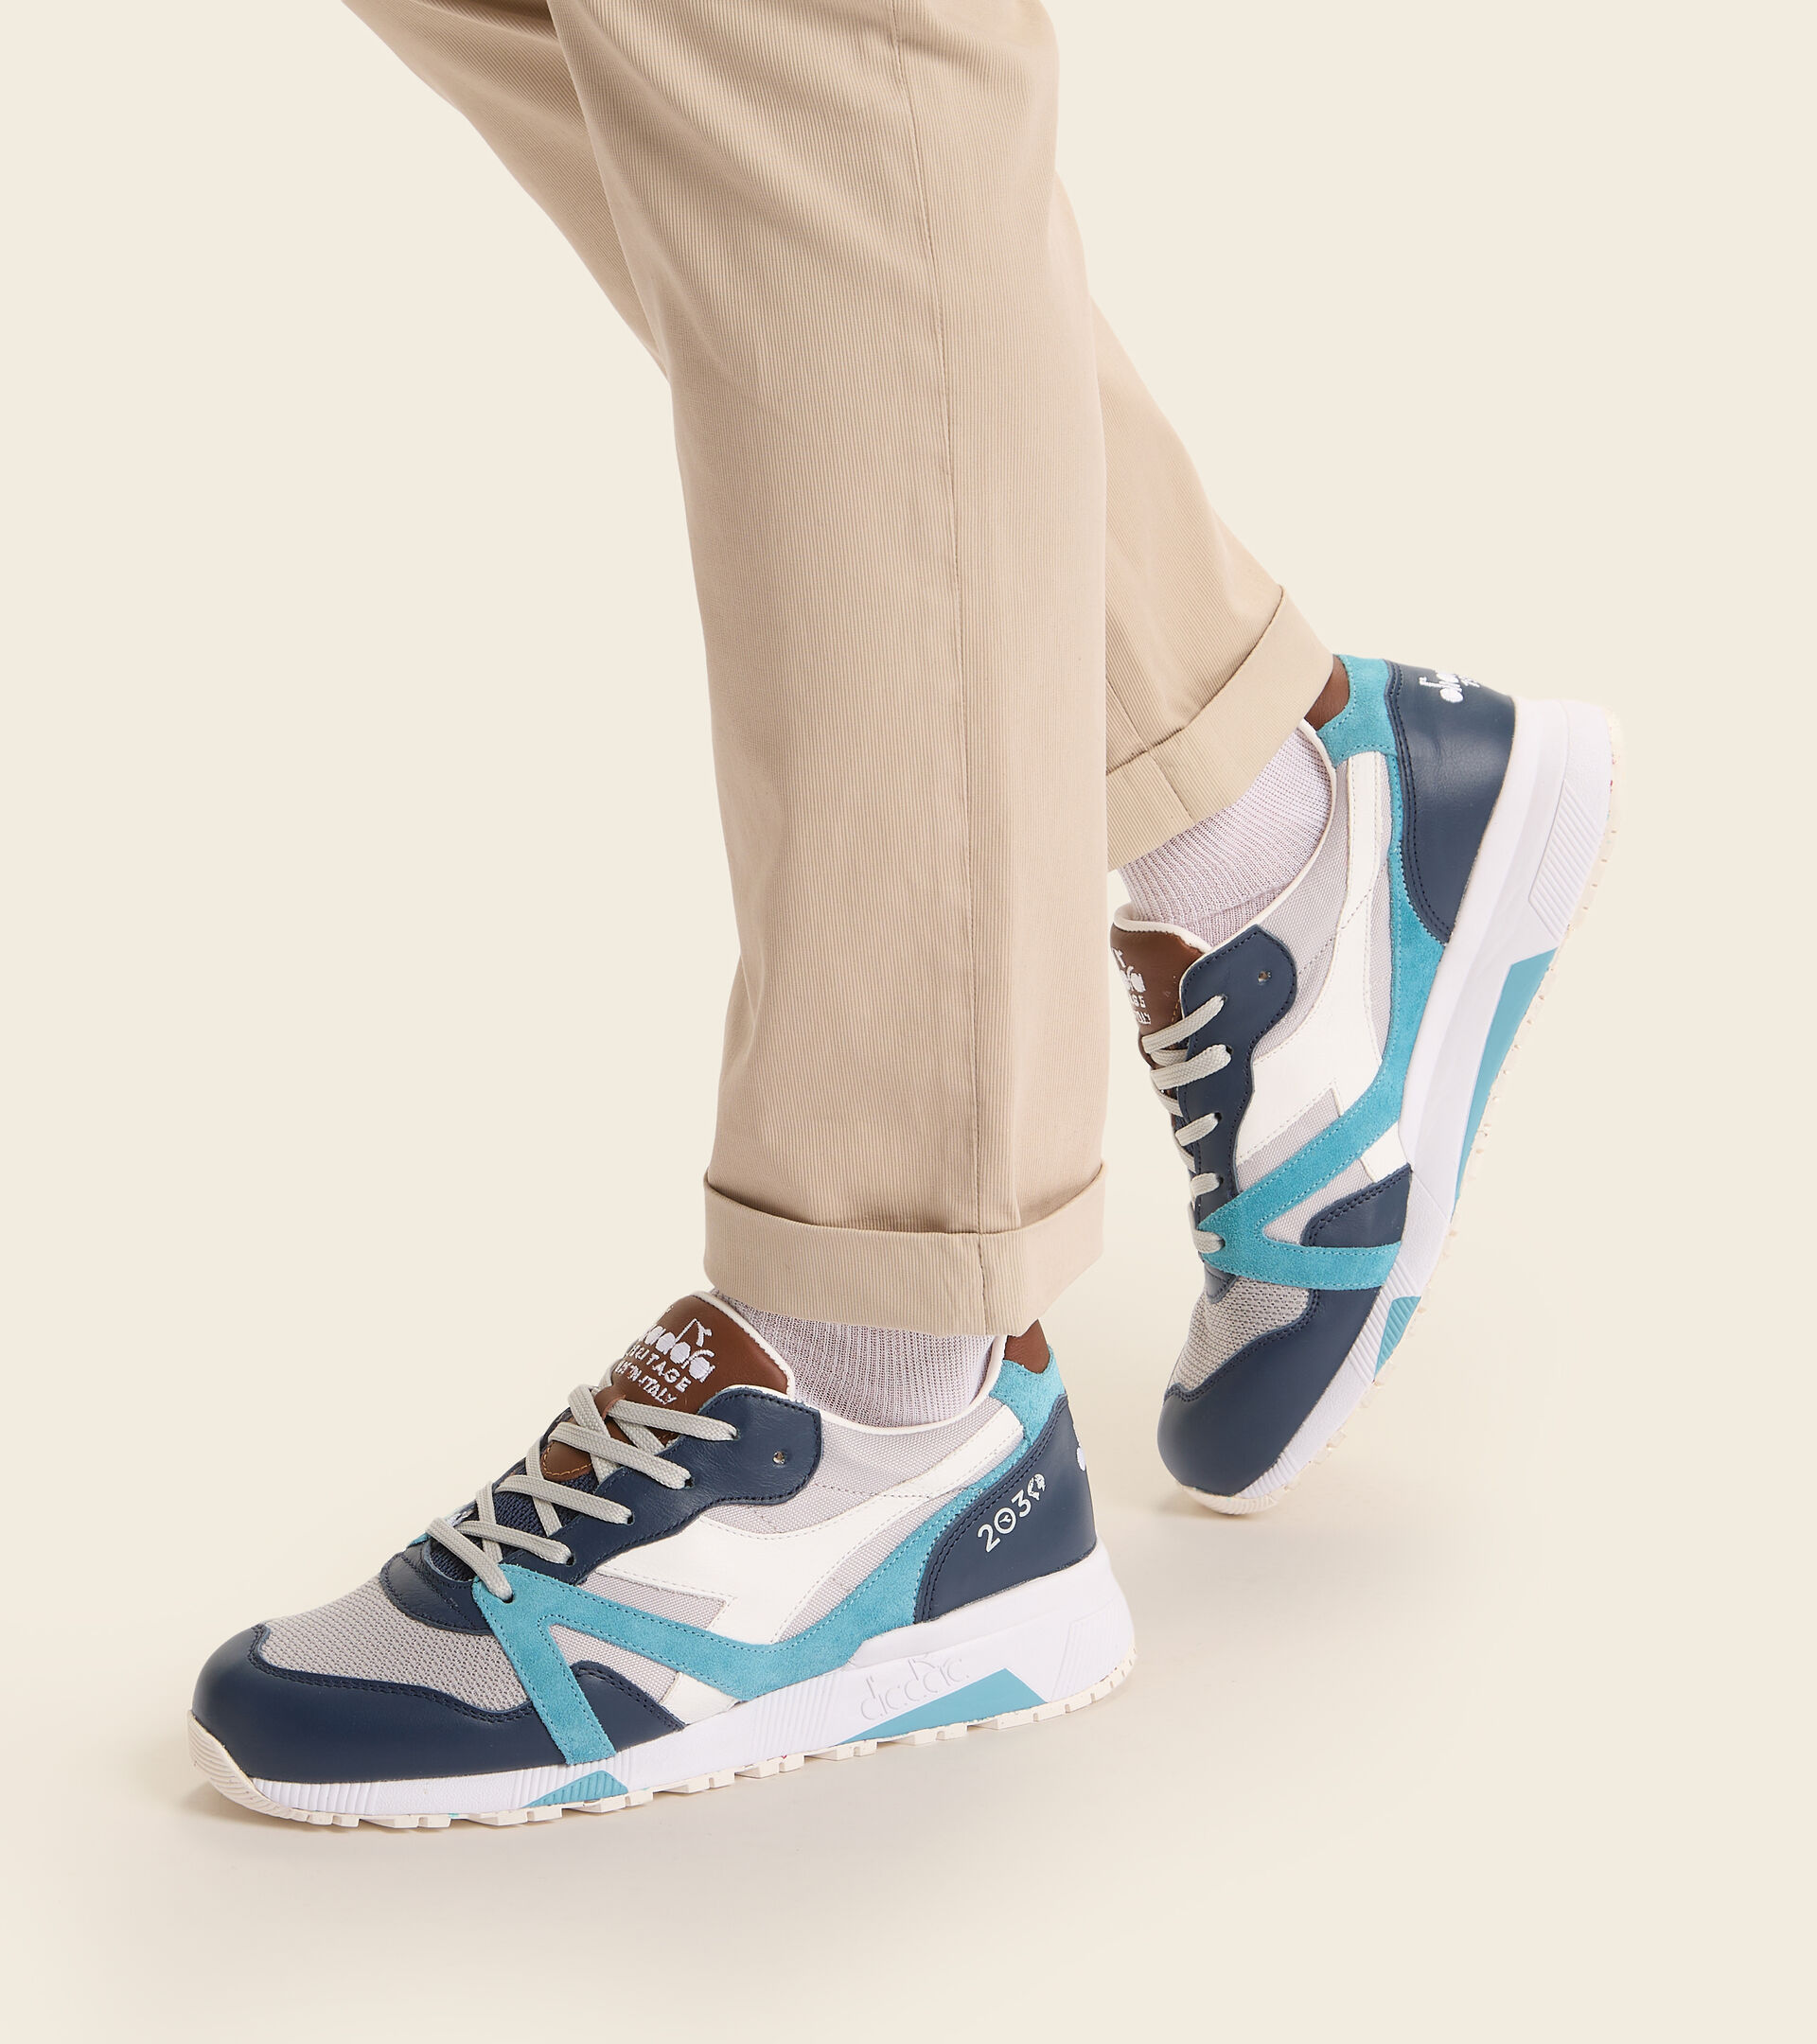 Diadora N9000 H Ita - Zapatos deportivos para hombre, color azul